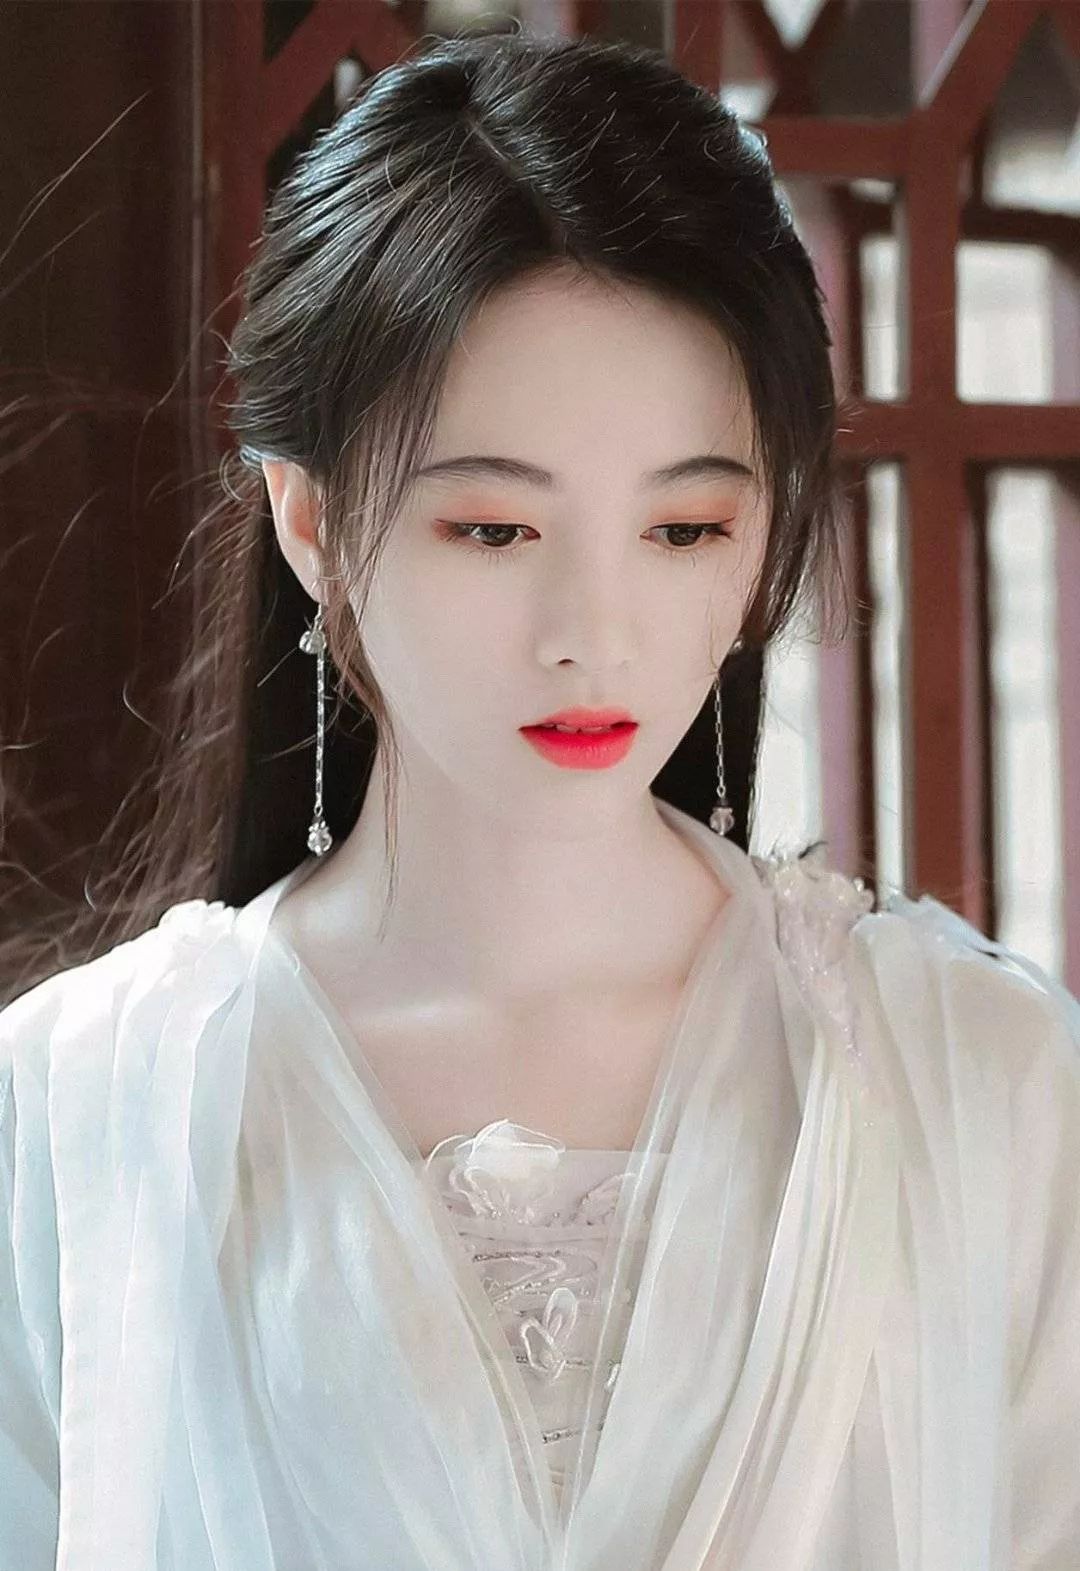 鞠婧祎的古装造型可以说是为她量身定制的好看,满屏的中国风美人瞬间